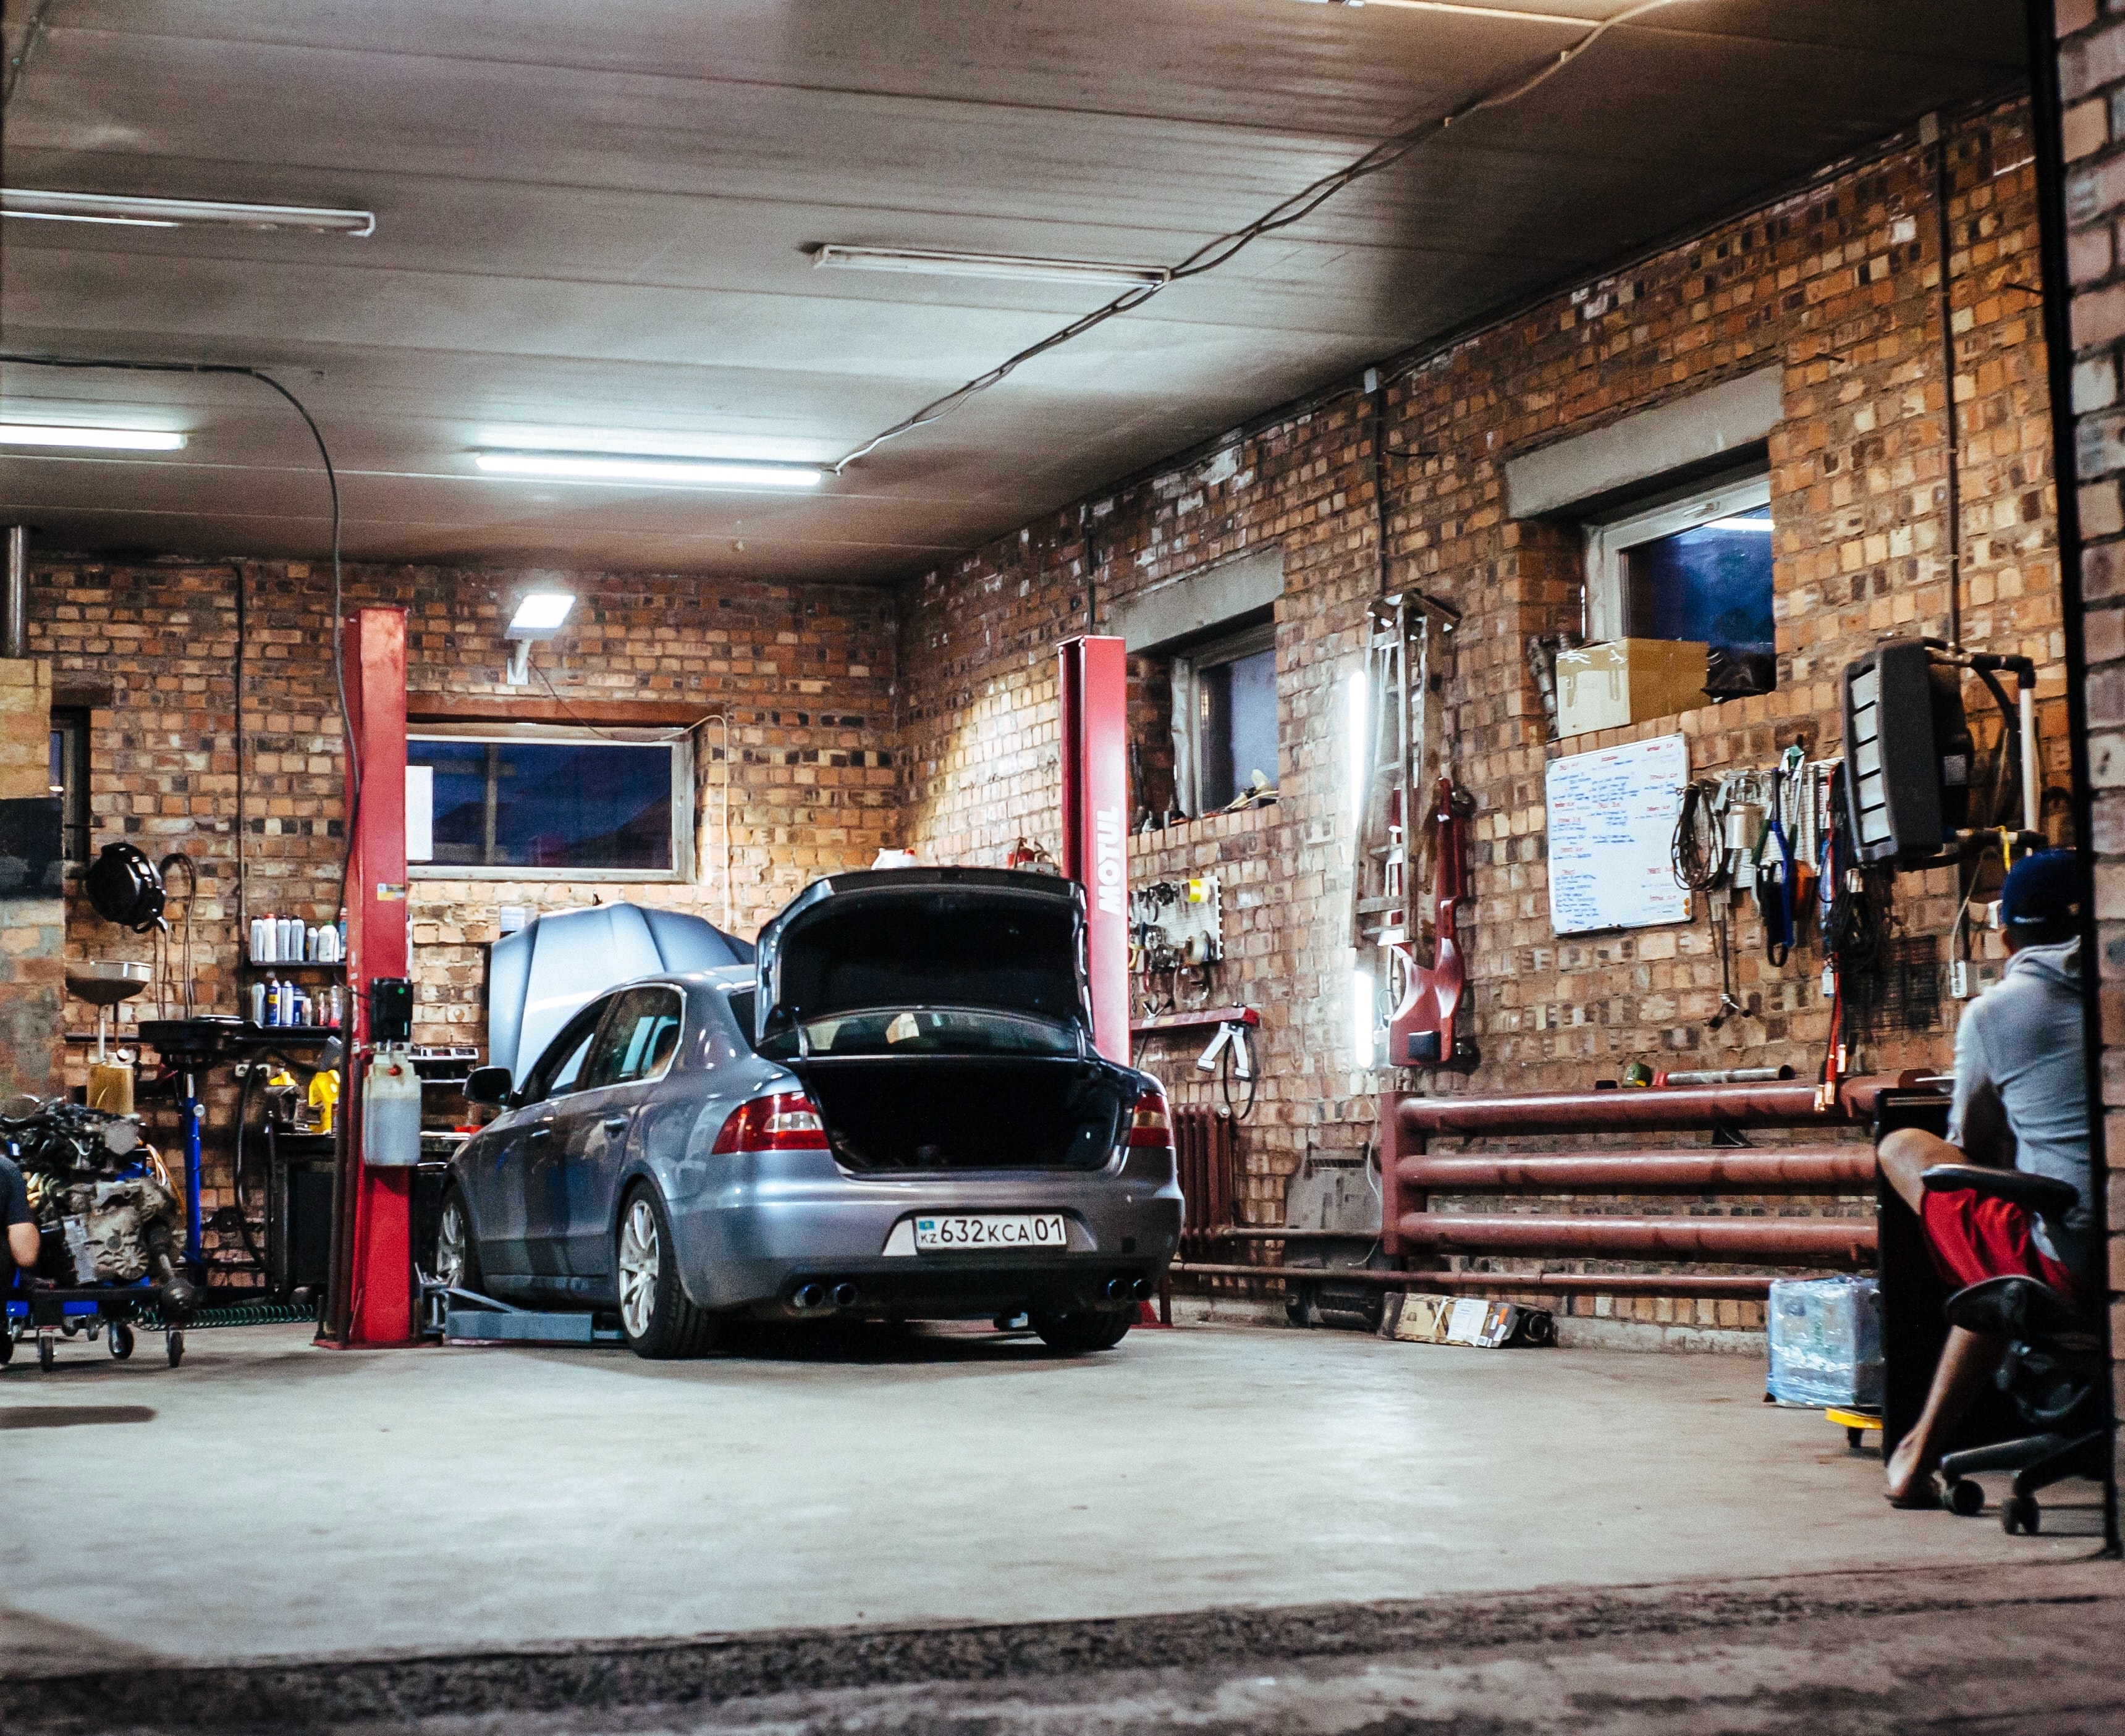 Les voitures électriques peuvent-elles rester longtemps au garage ?